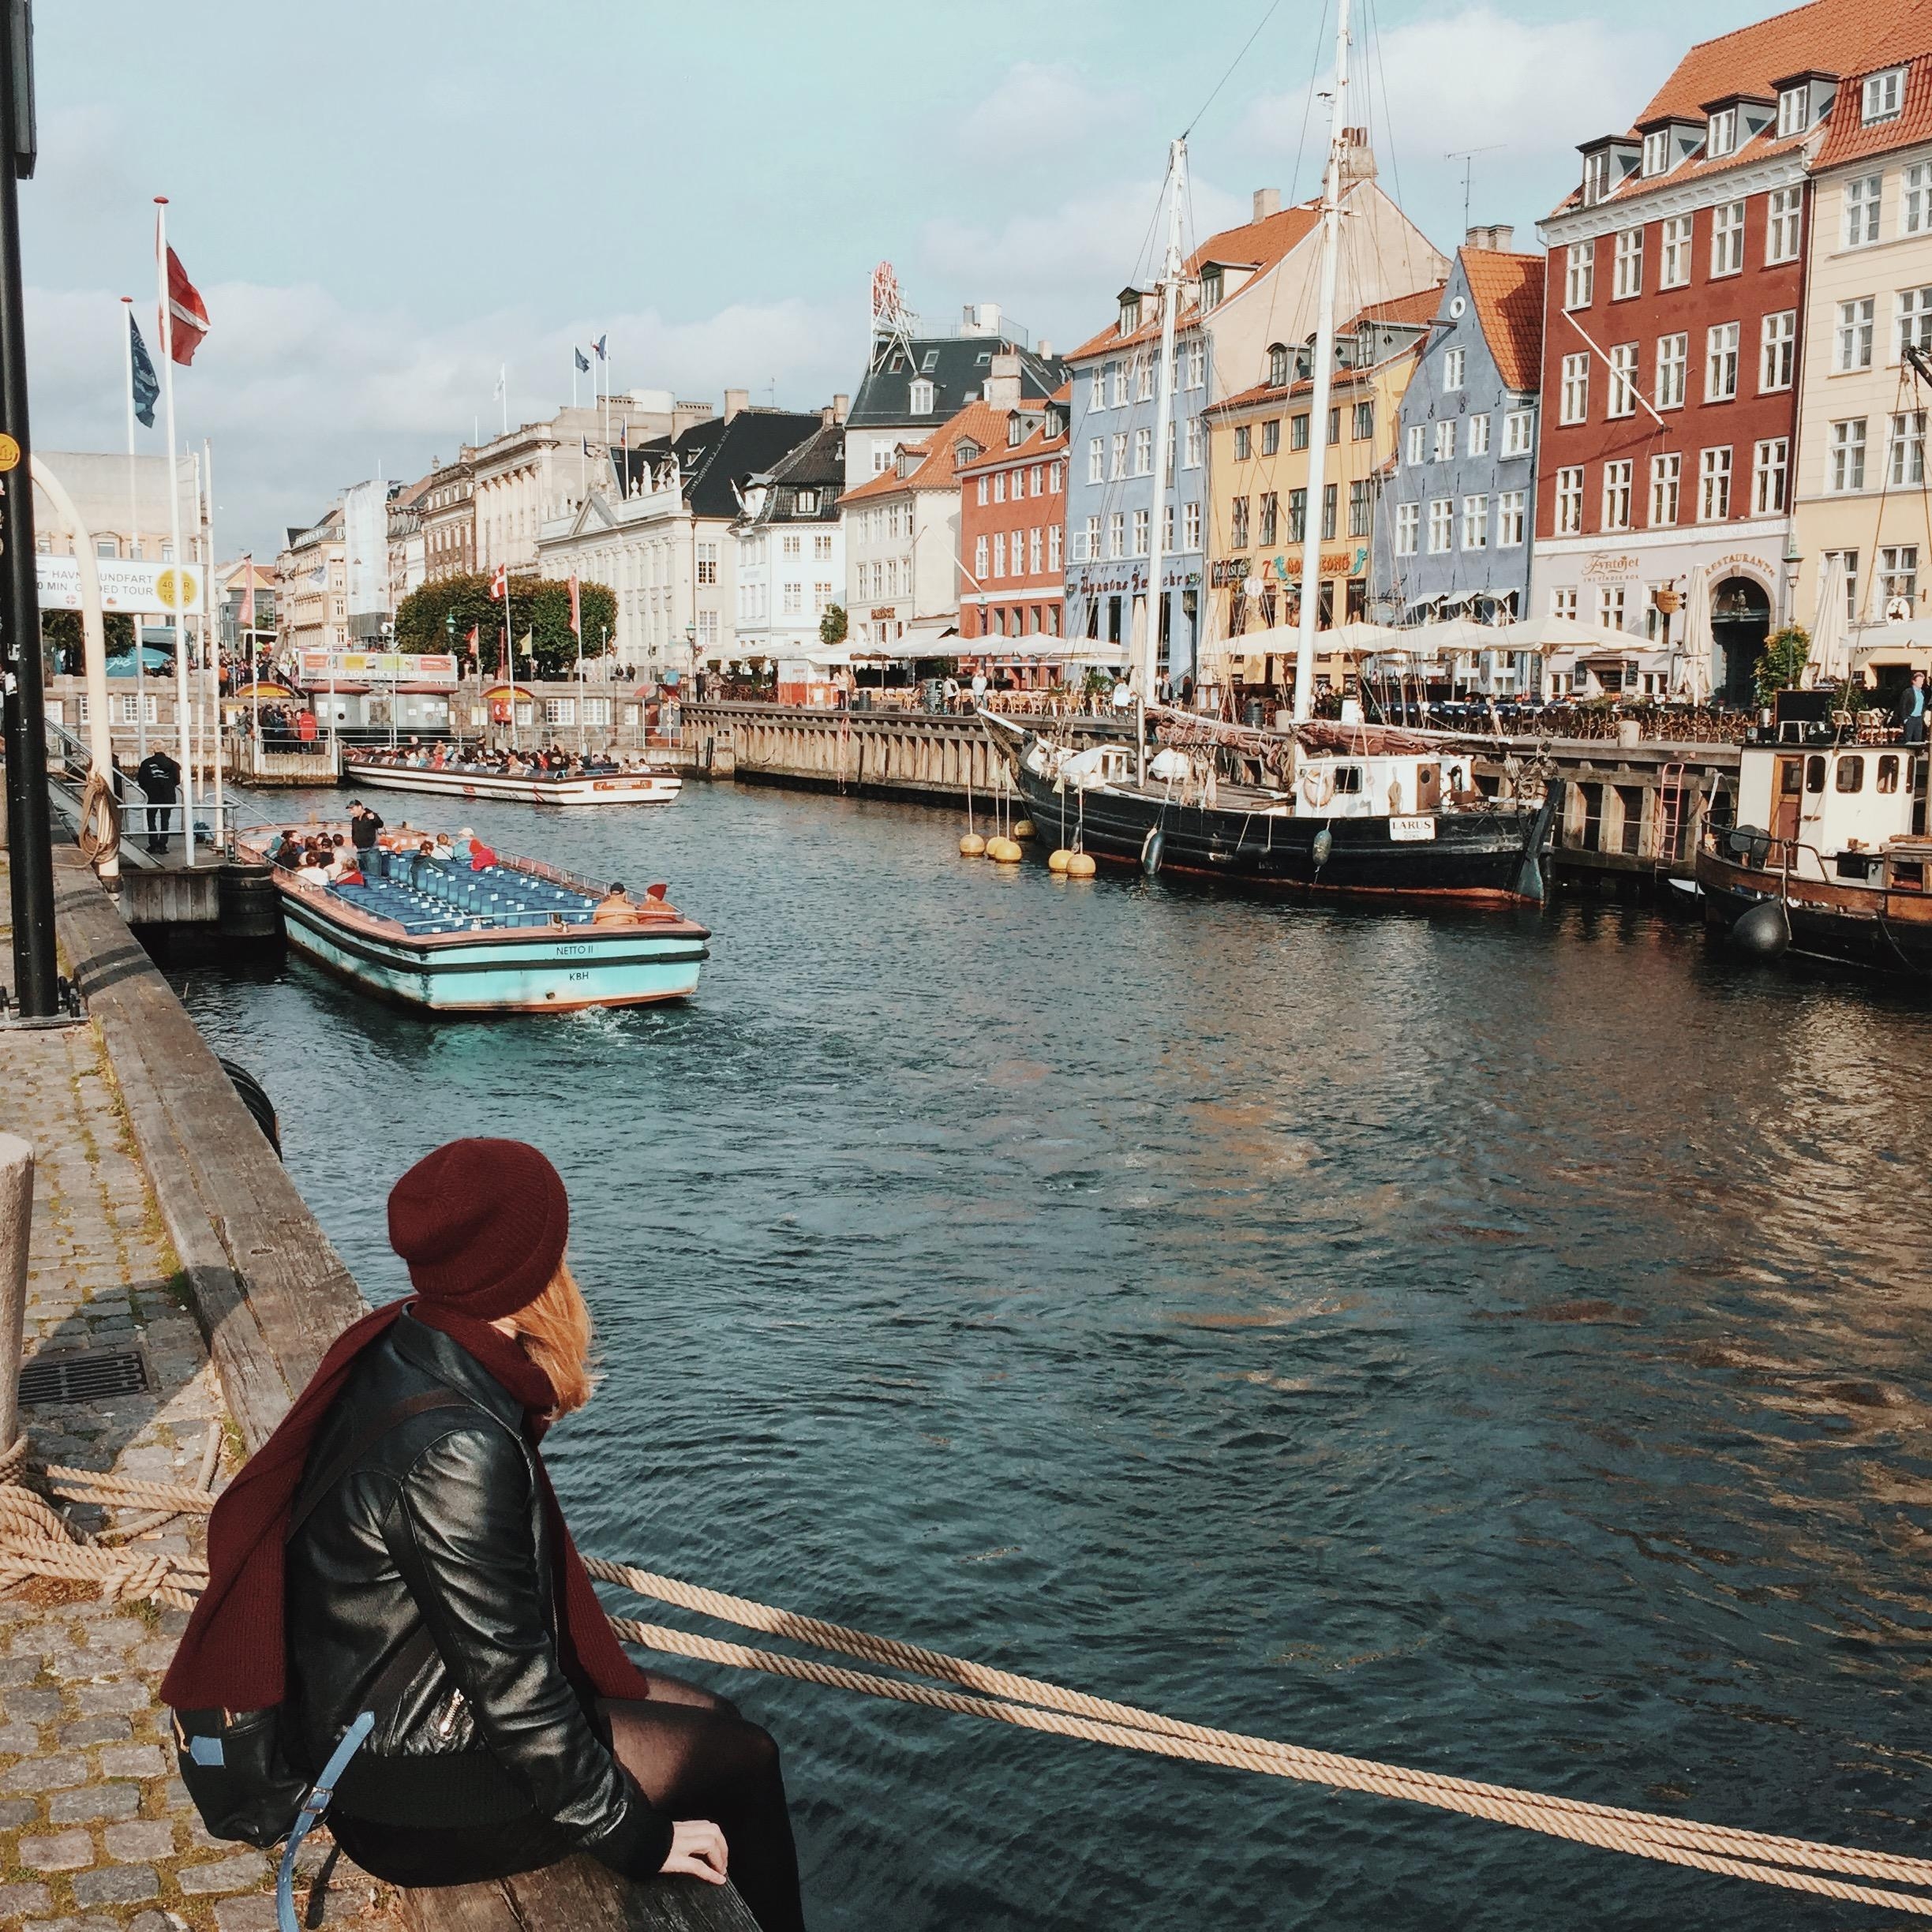 Kopenhagen ist immer eine Reise wert! #travelchallenge #städtetrip